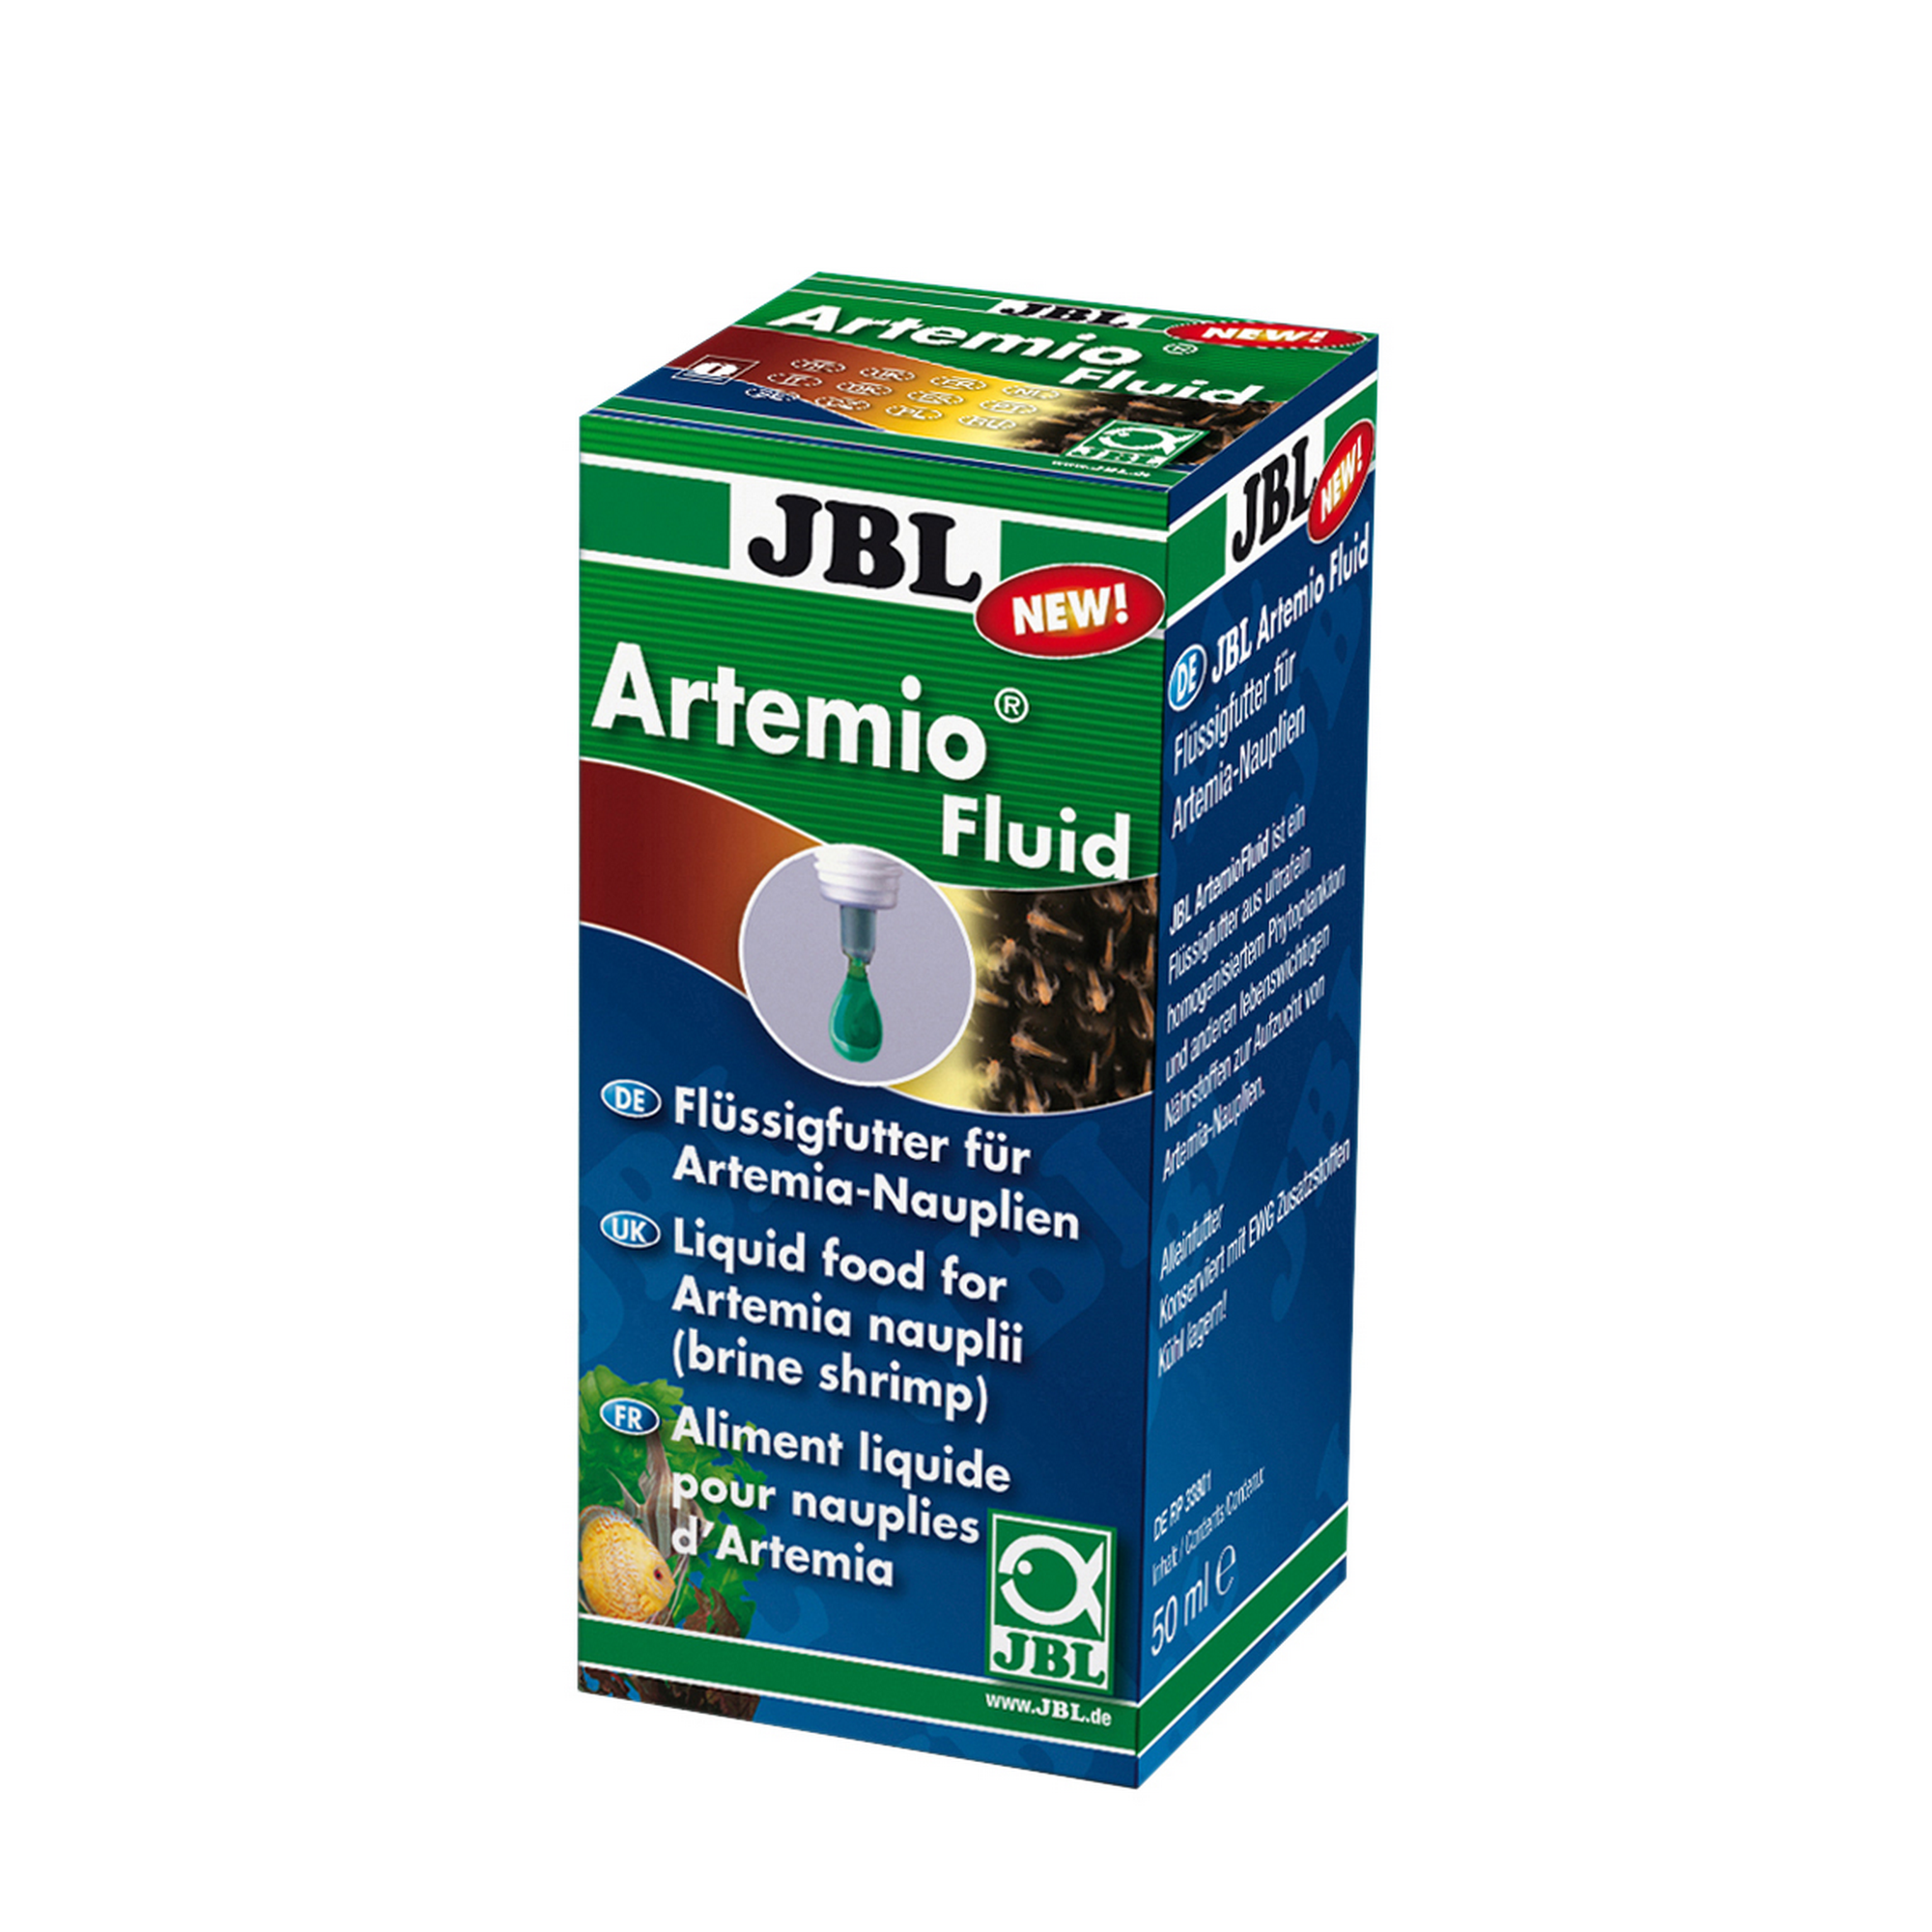 ArtemioFluid 50ml, JBL + product picture